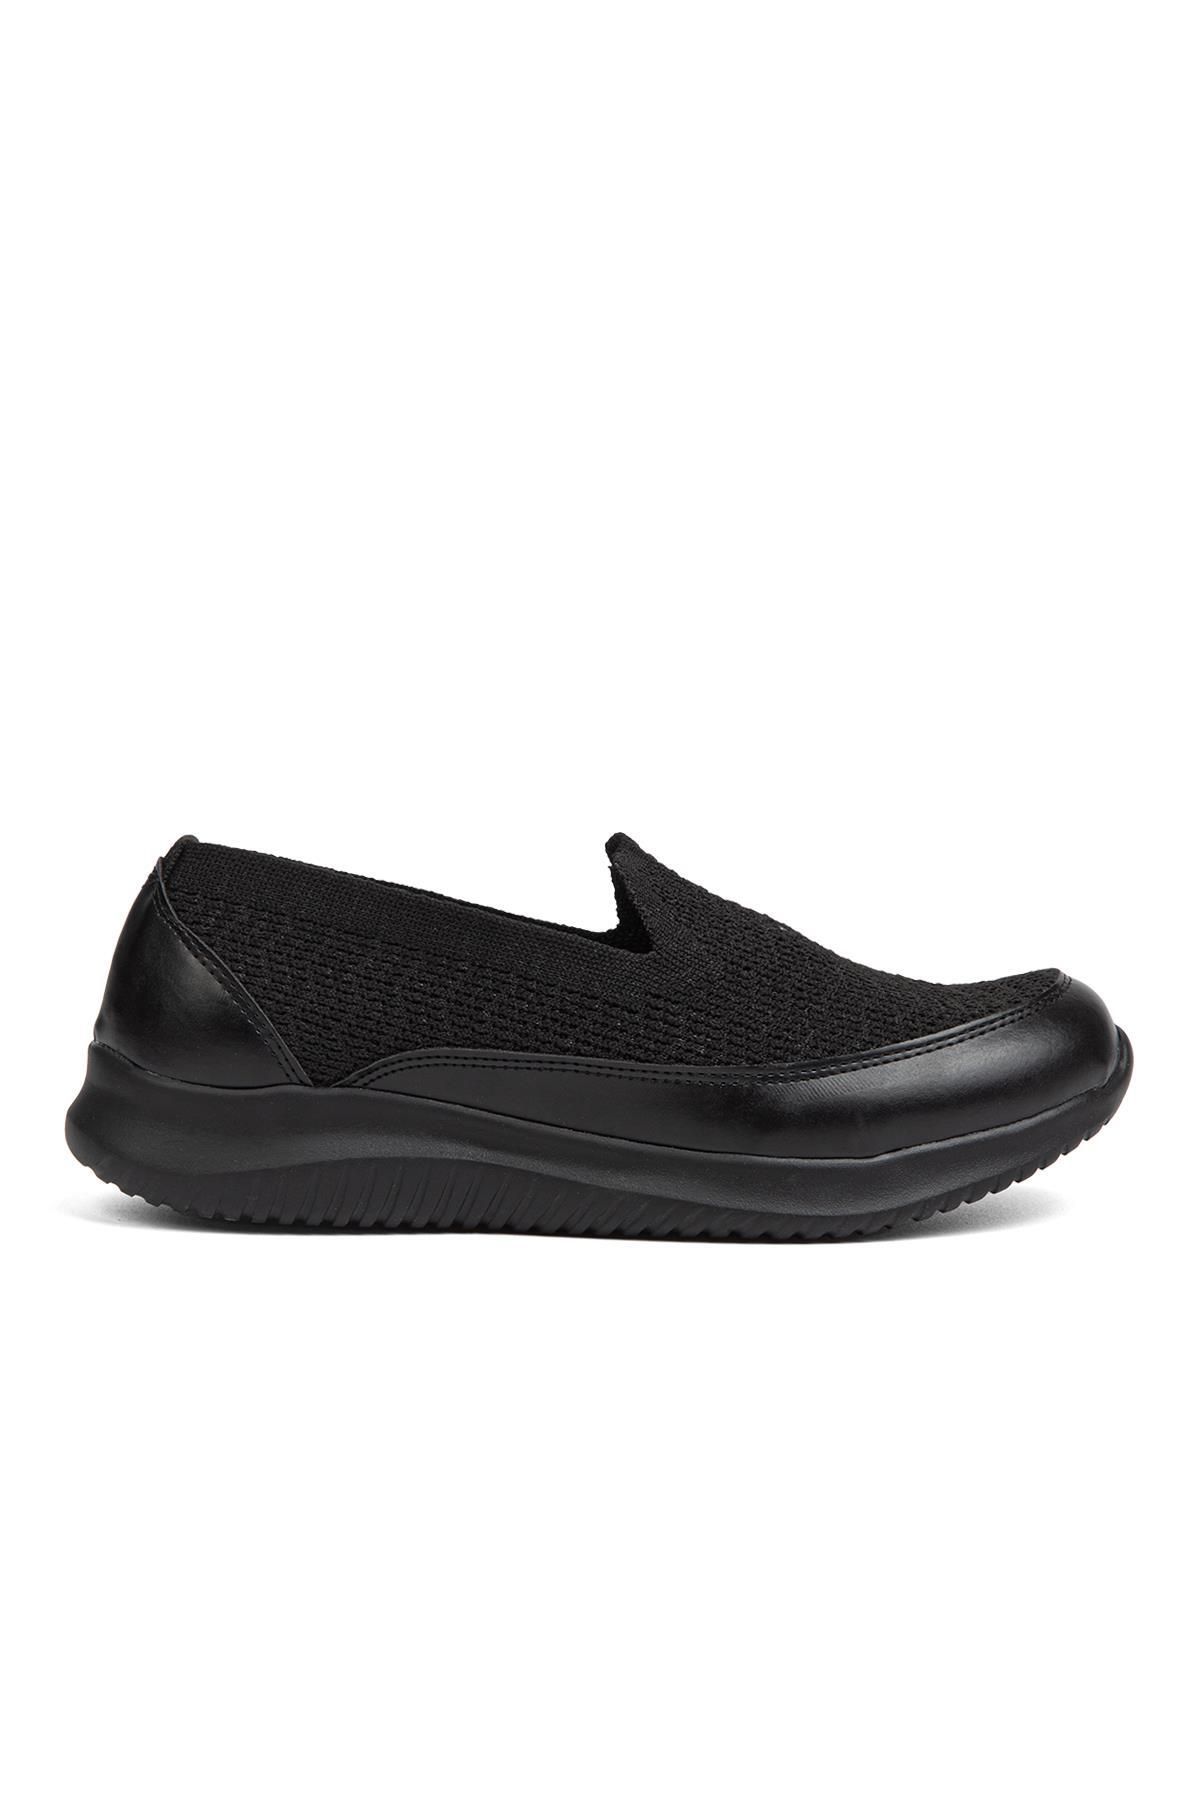 Pierre Cardin ® | PC-31332- Siyah - Kadın Spor Ayakkabı